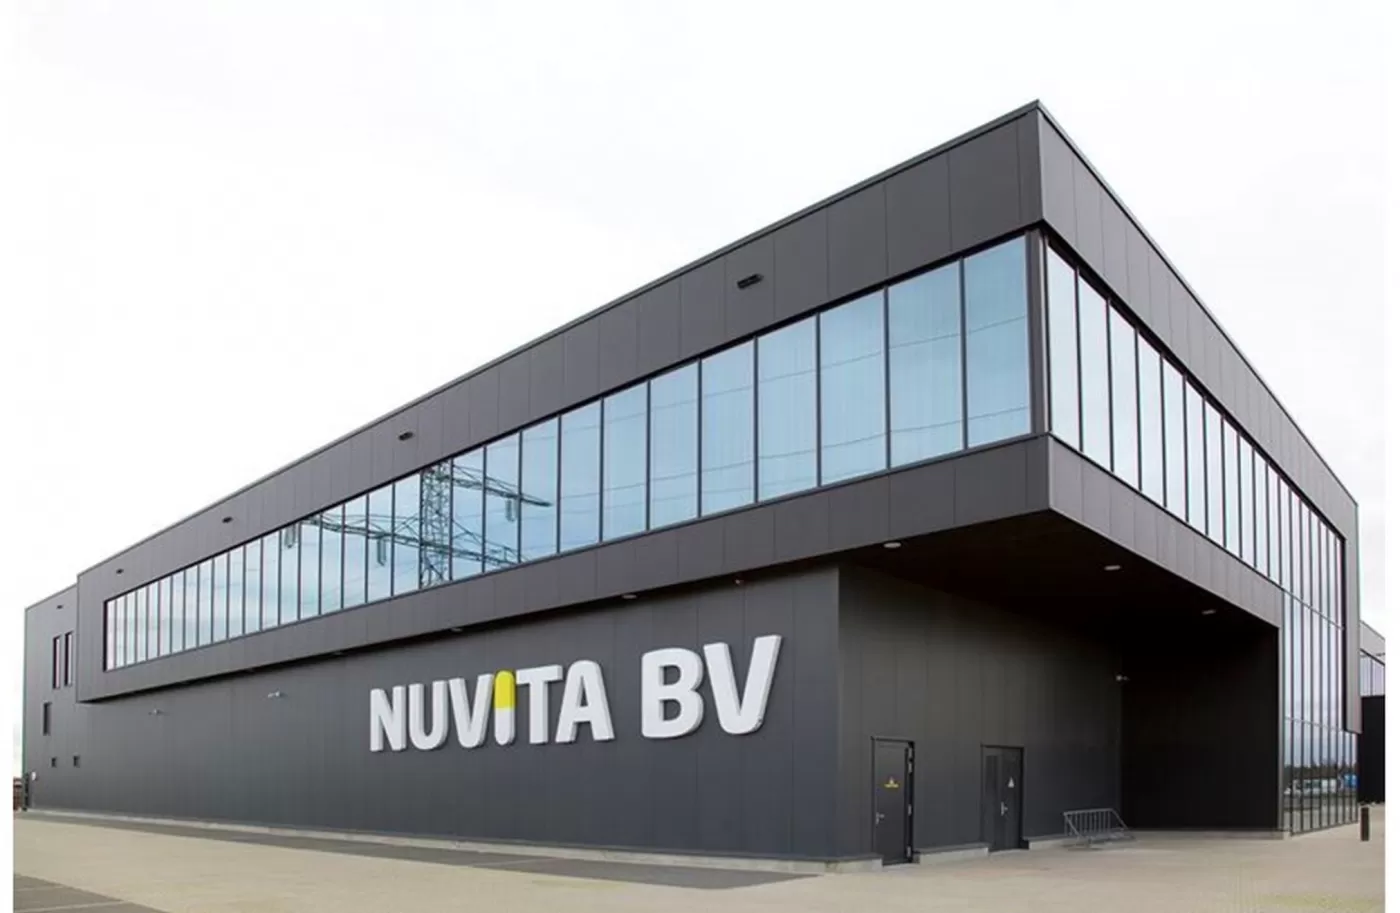 Nieuwbouw fabriek voor Nuvita